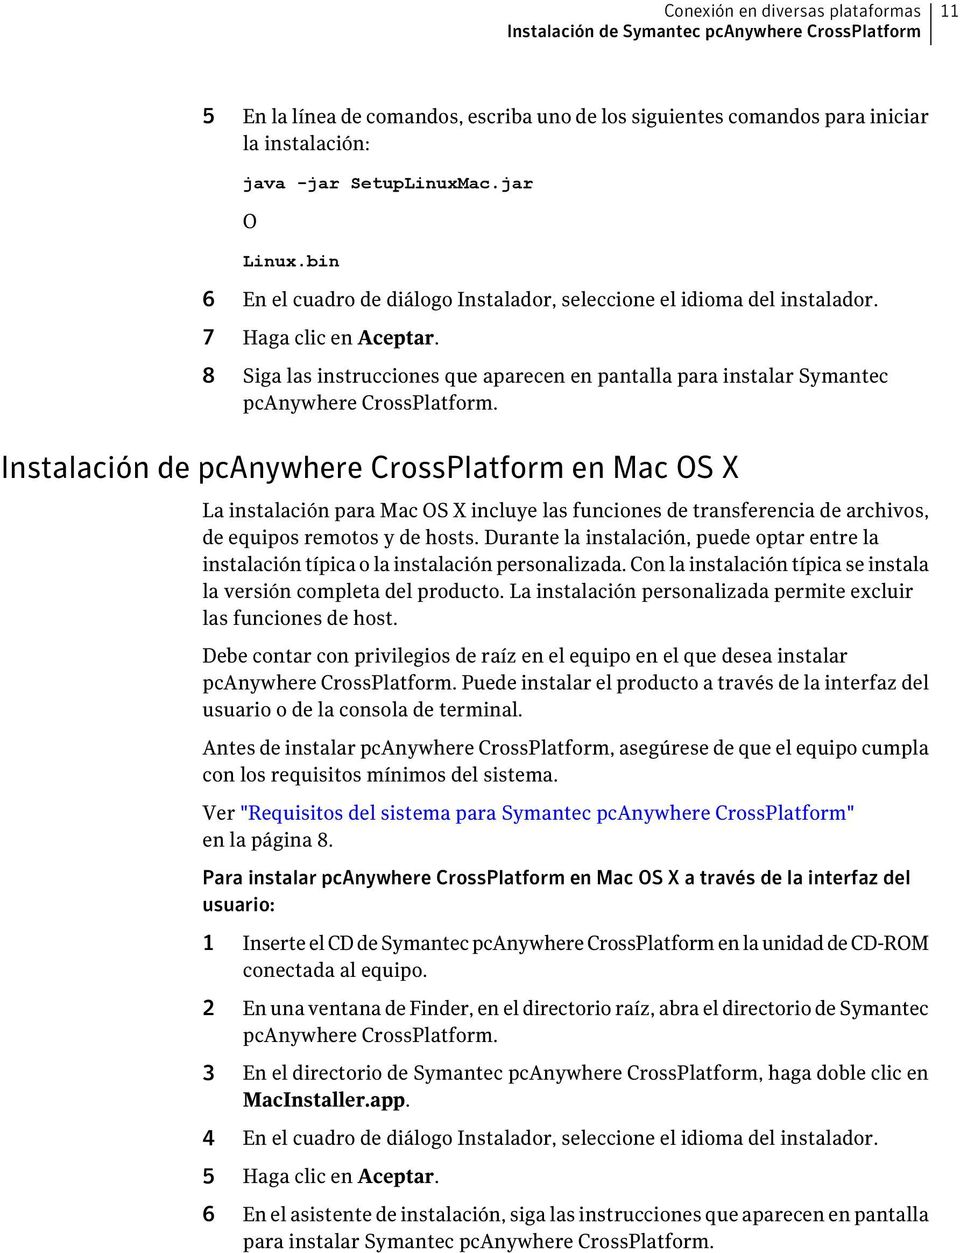 8 Siga las instrucciones que aparecen en pantalla para instalar Symantec pcanywhere CrossPlatform.